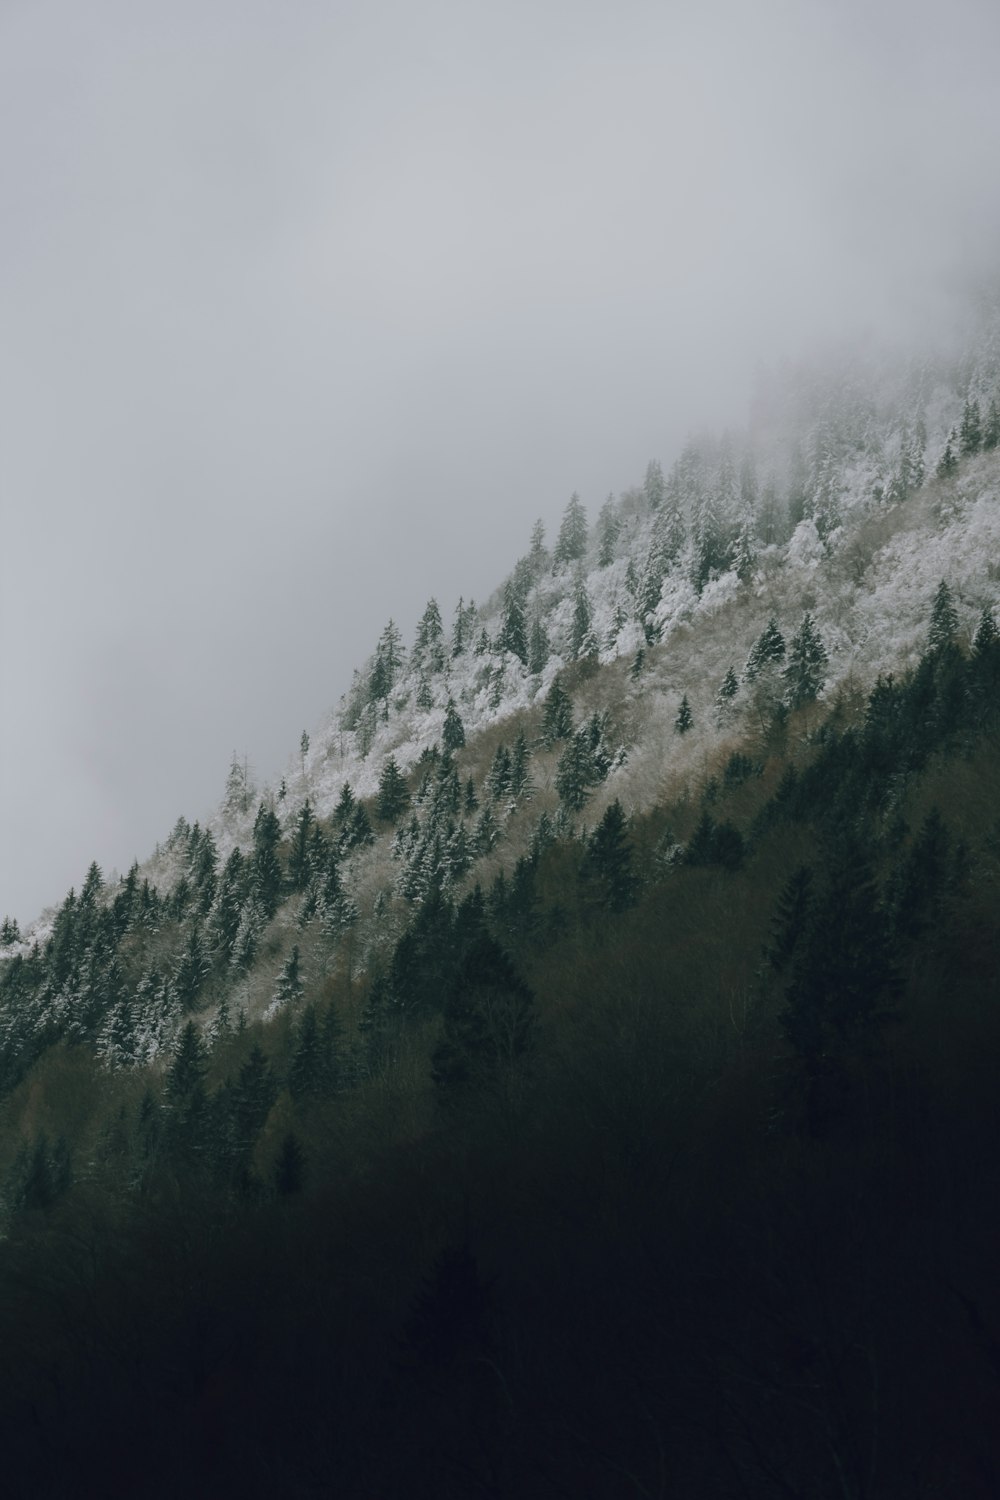 uma montanha coberta de neve e árvores sob um céu nublado